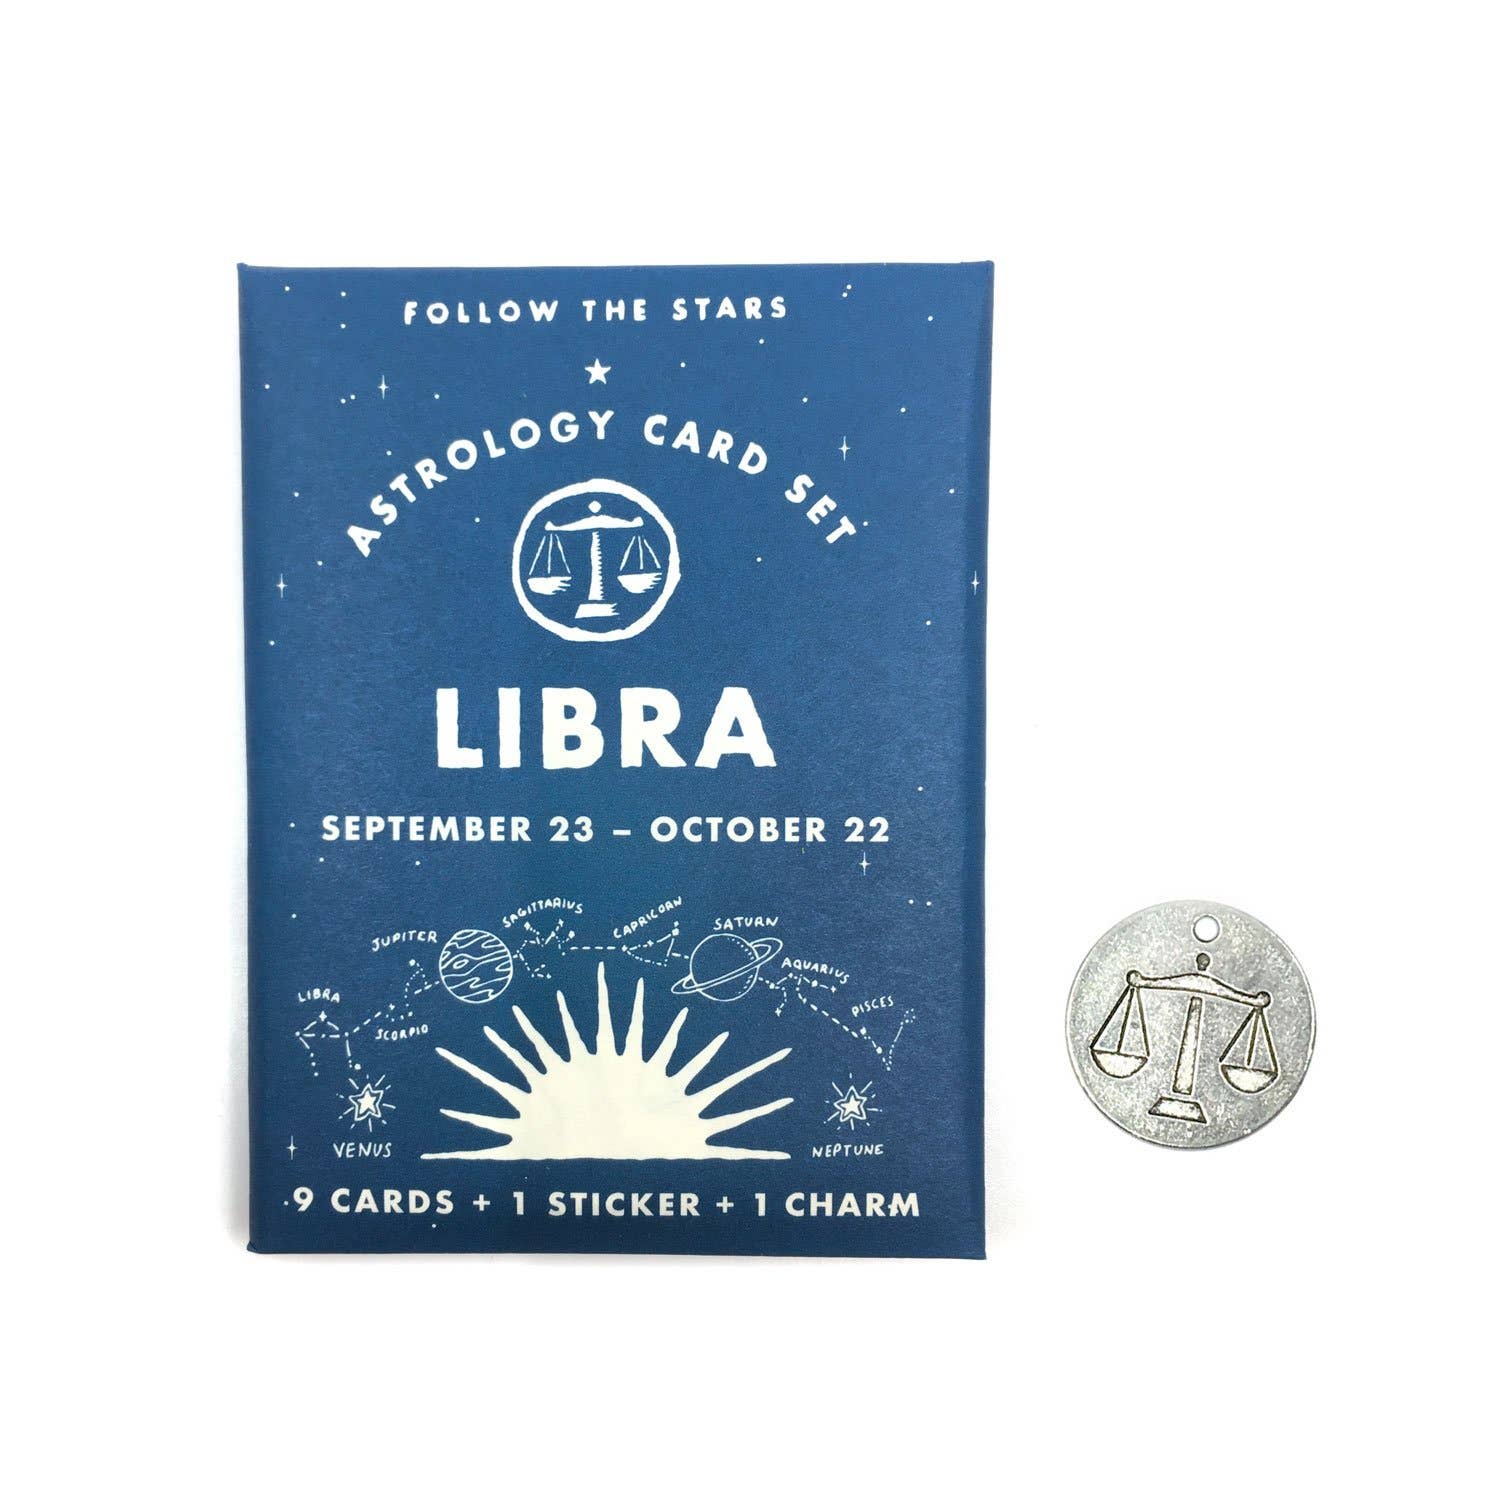 LIBRA Astrology Card Set (Sept 23 - Oct 22)